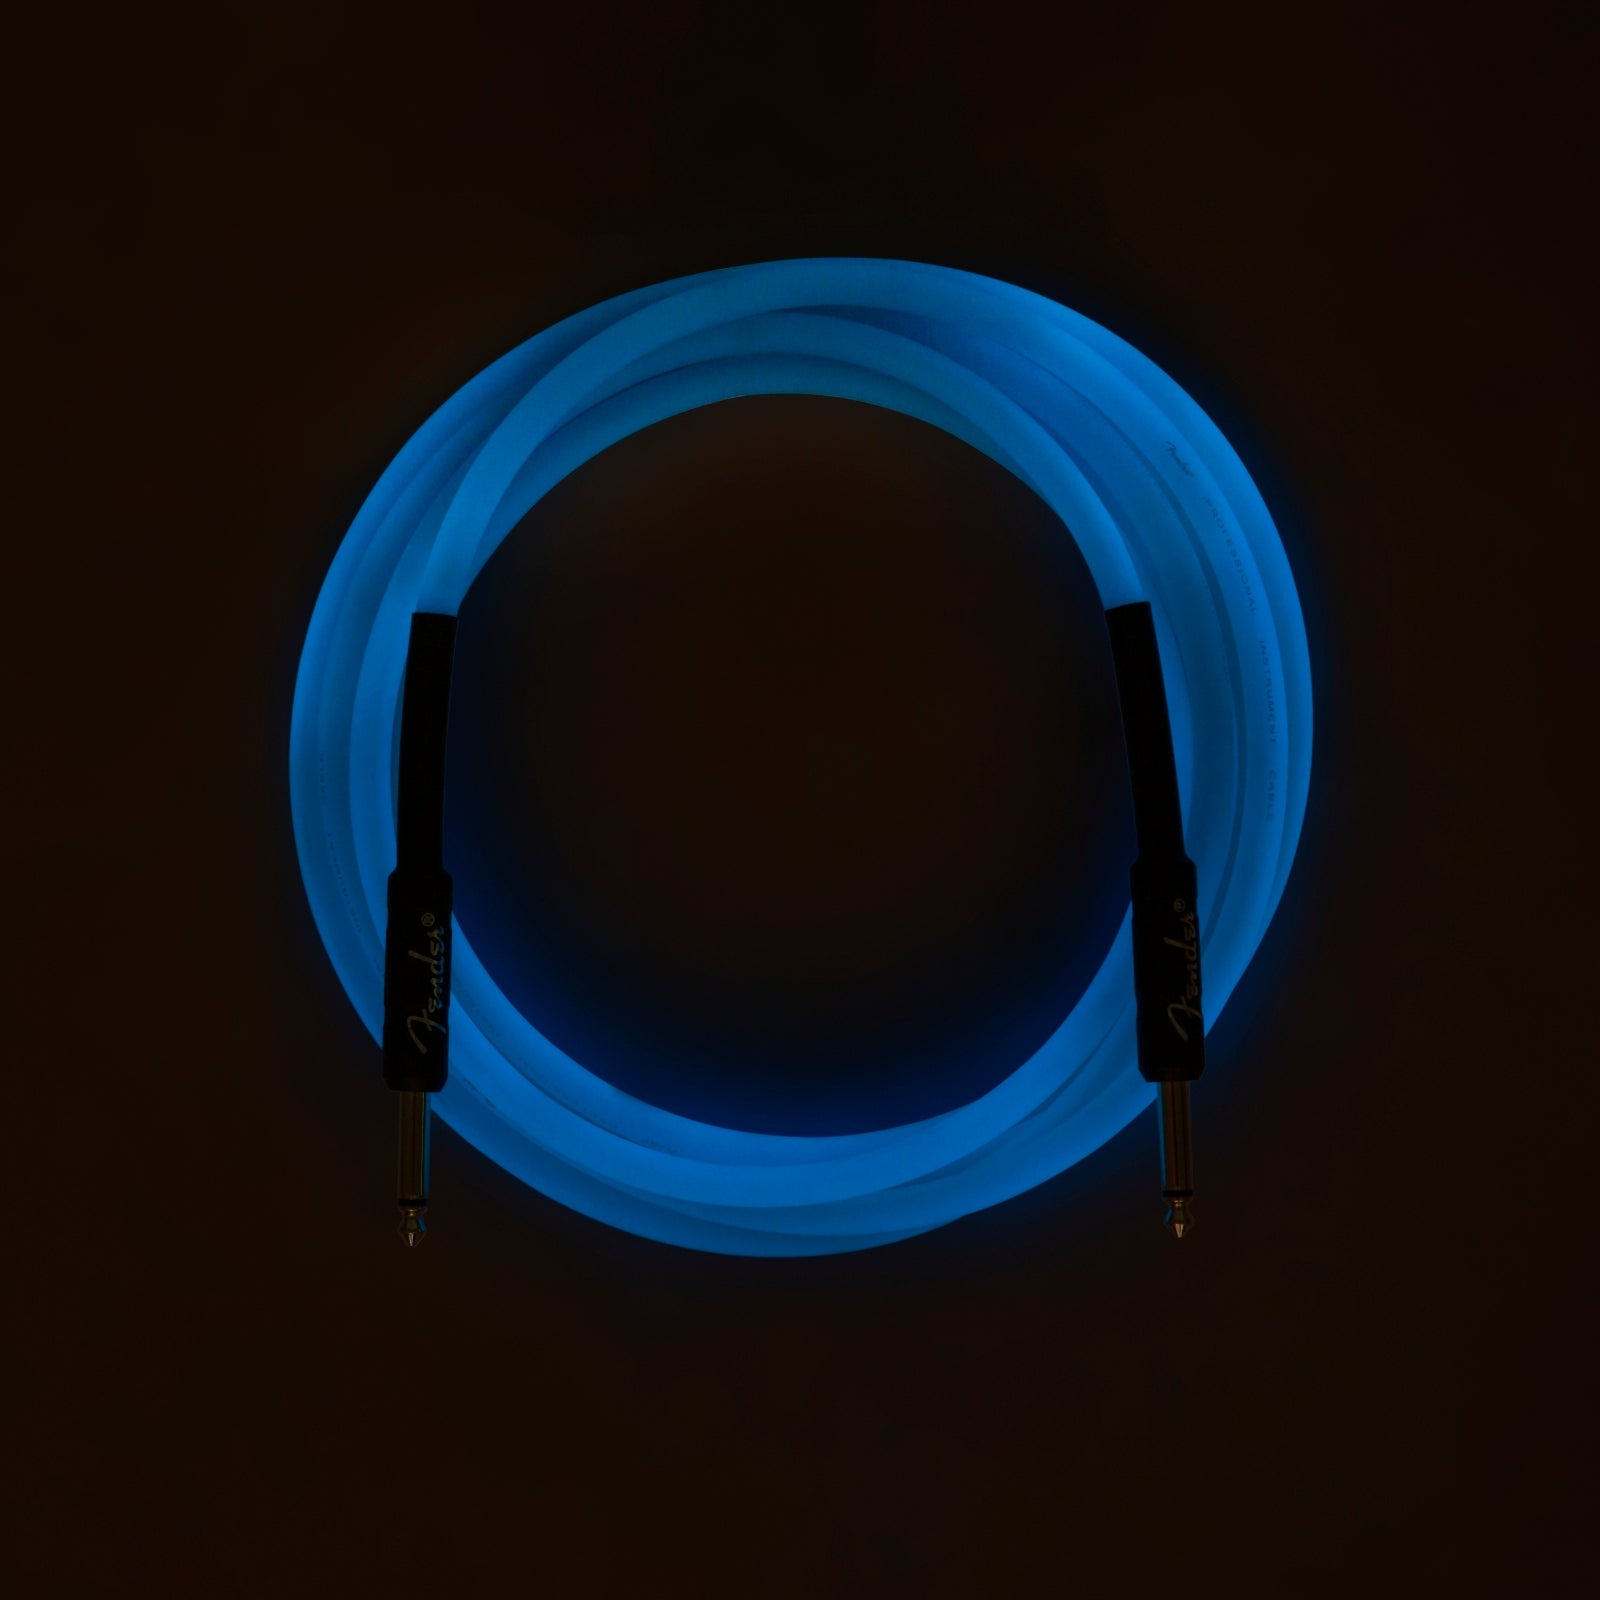 Fender 10' Instrument Cable Glow In The Dark - Dark Blue